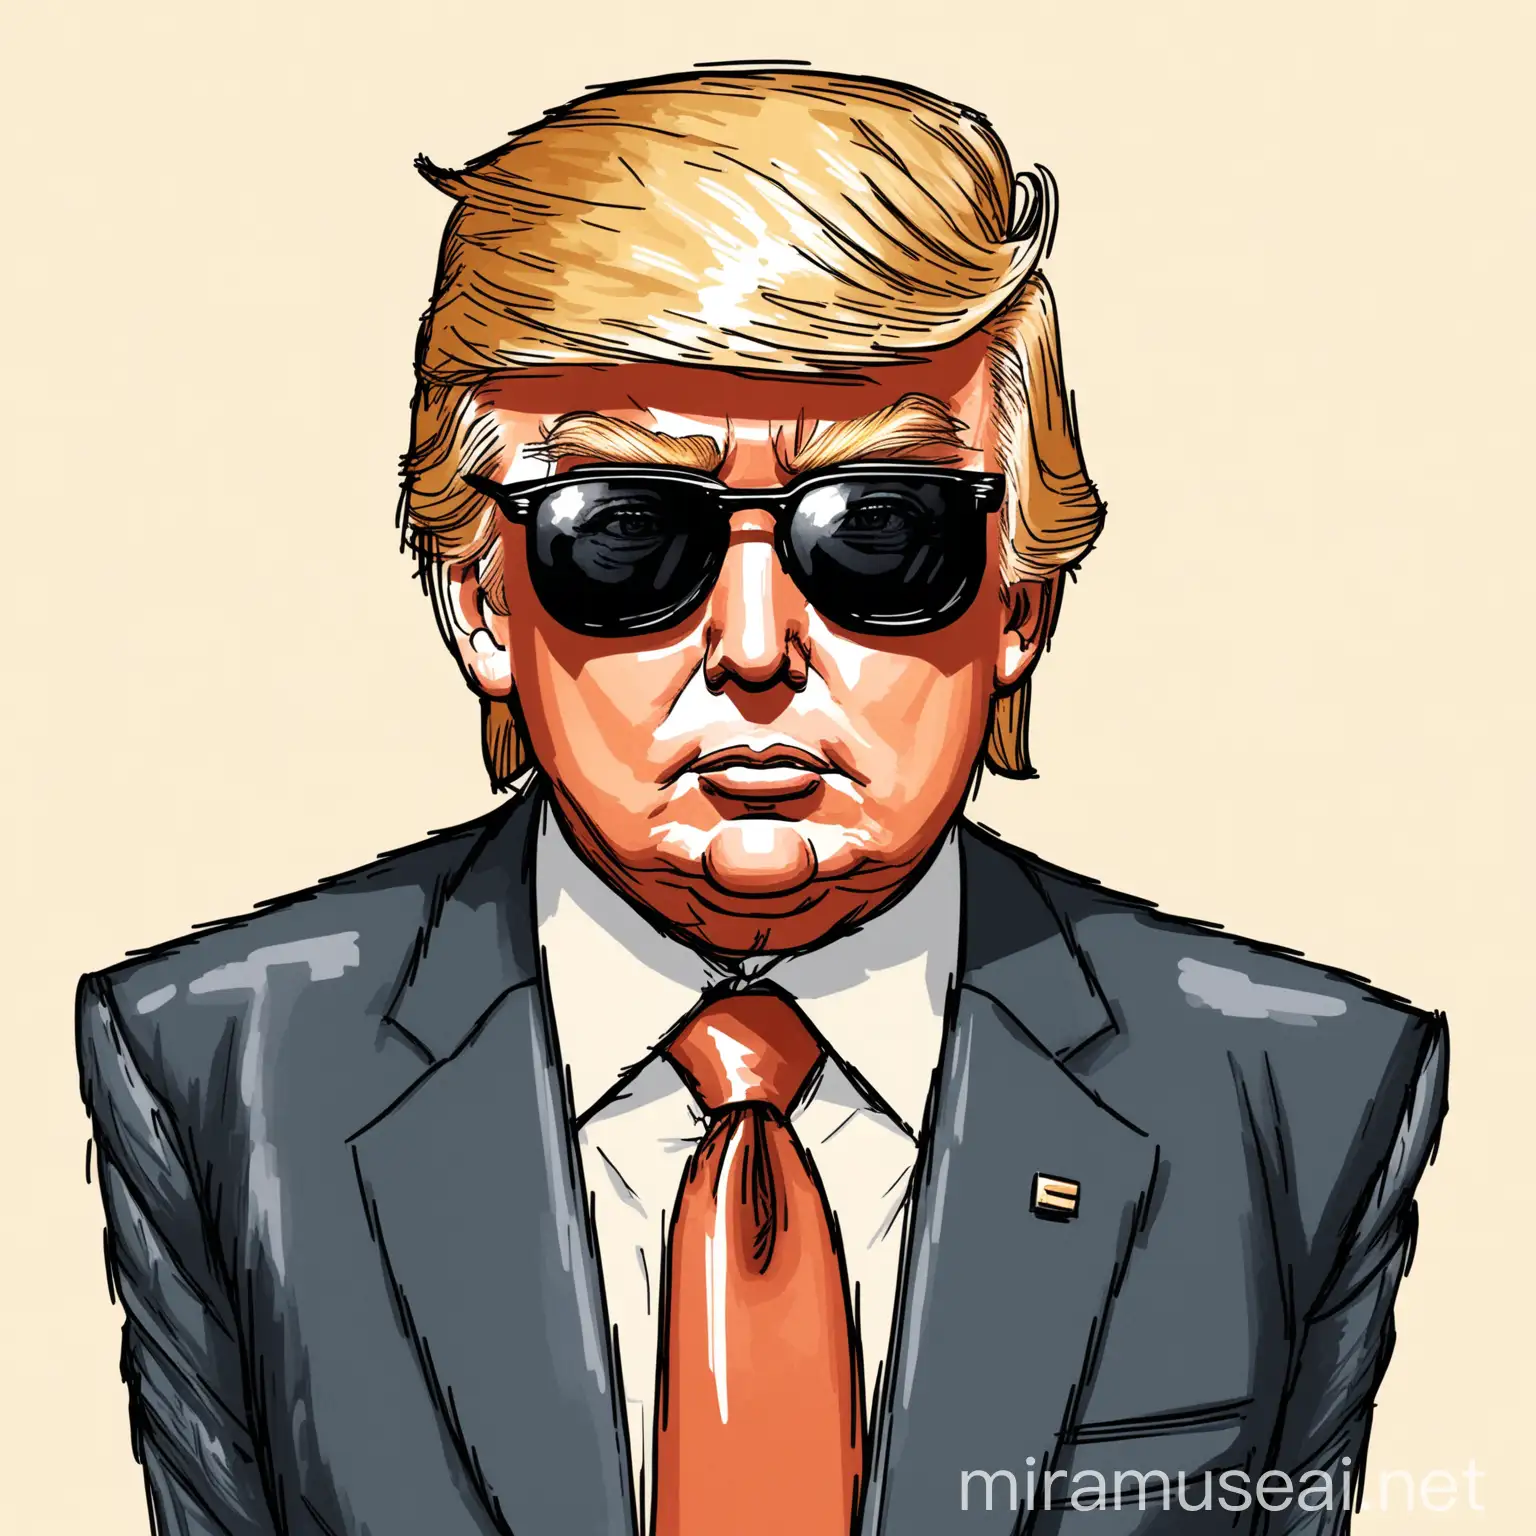 Politician in Formal Attire Wearing Sunglasses